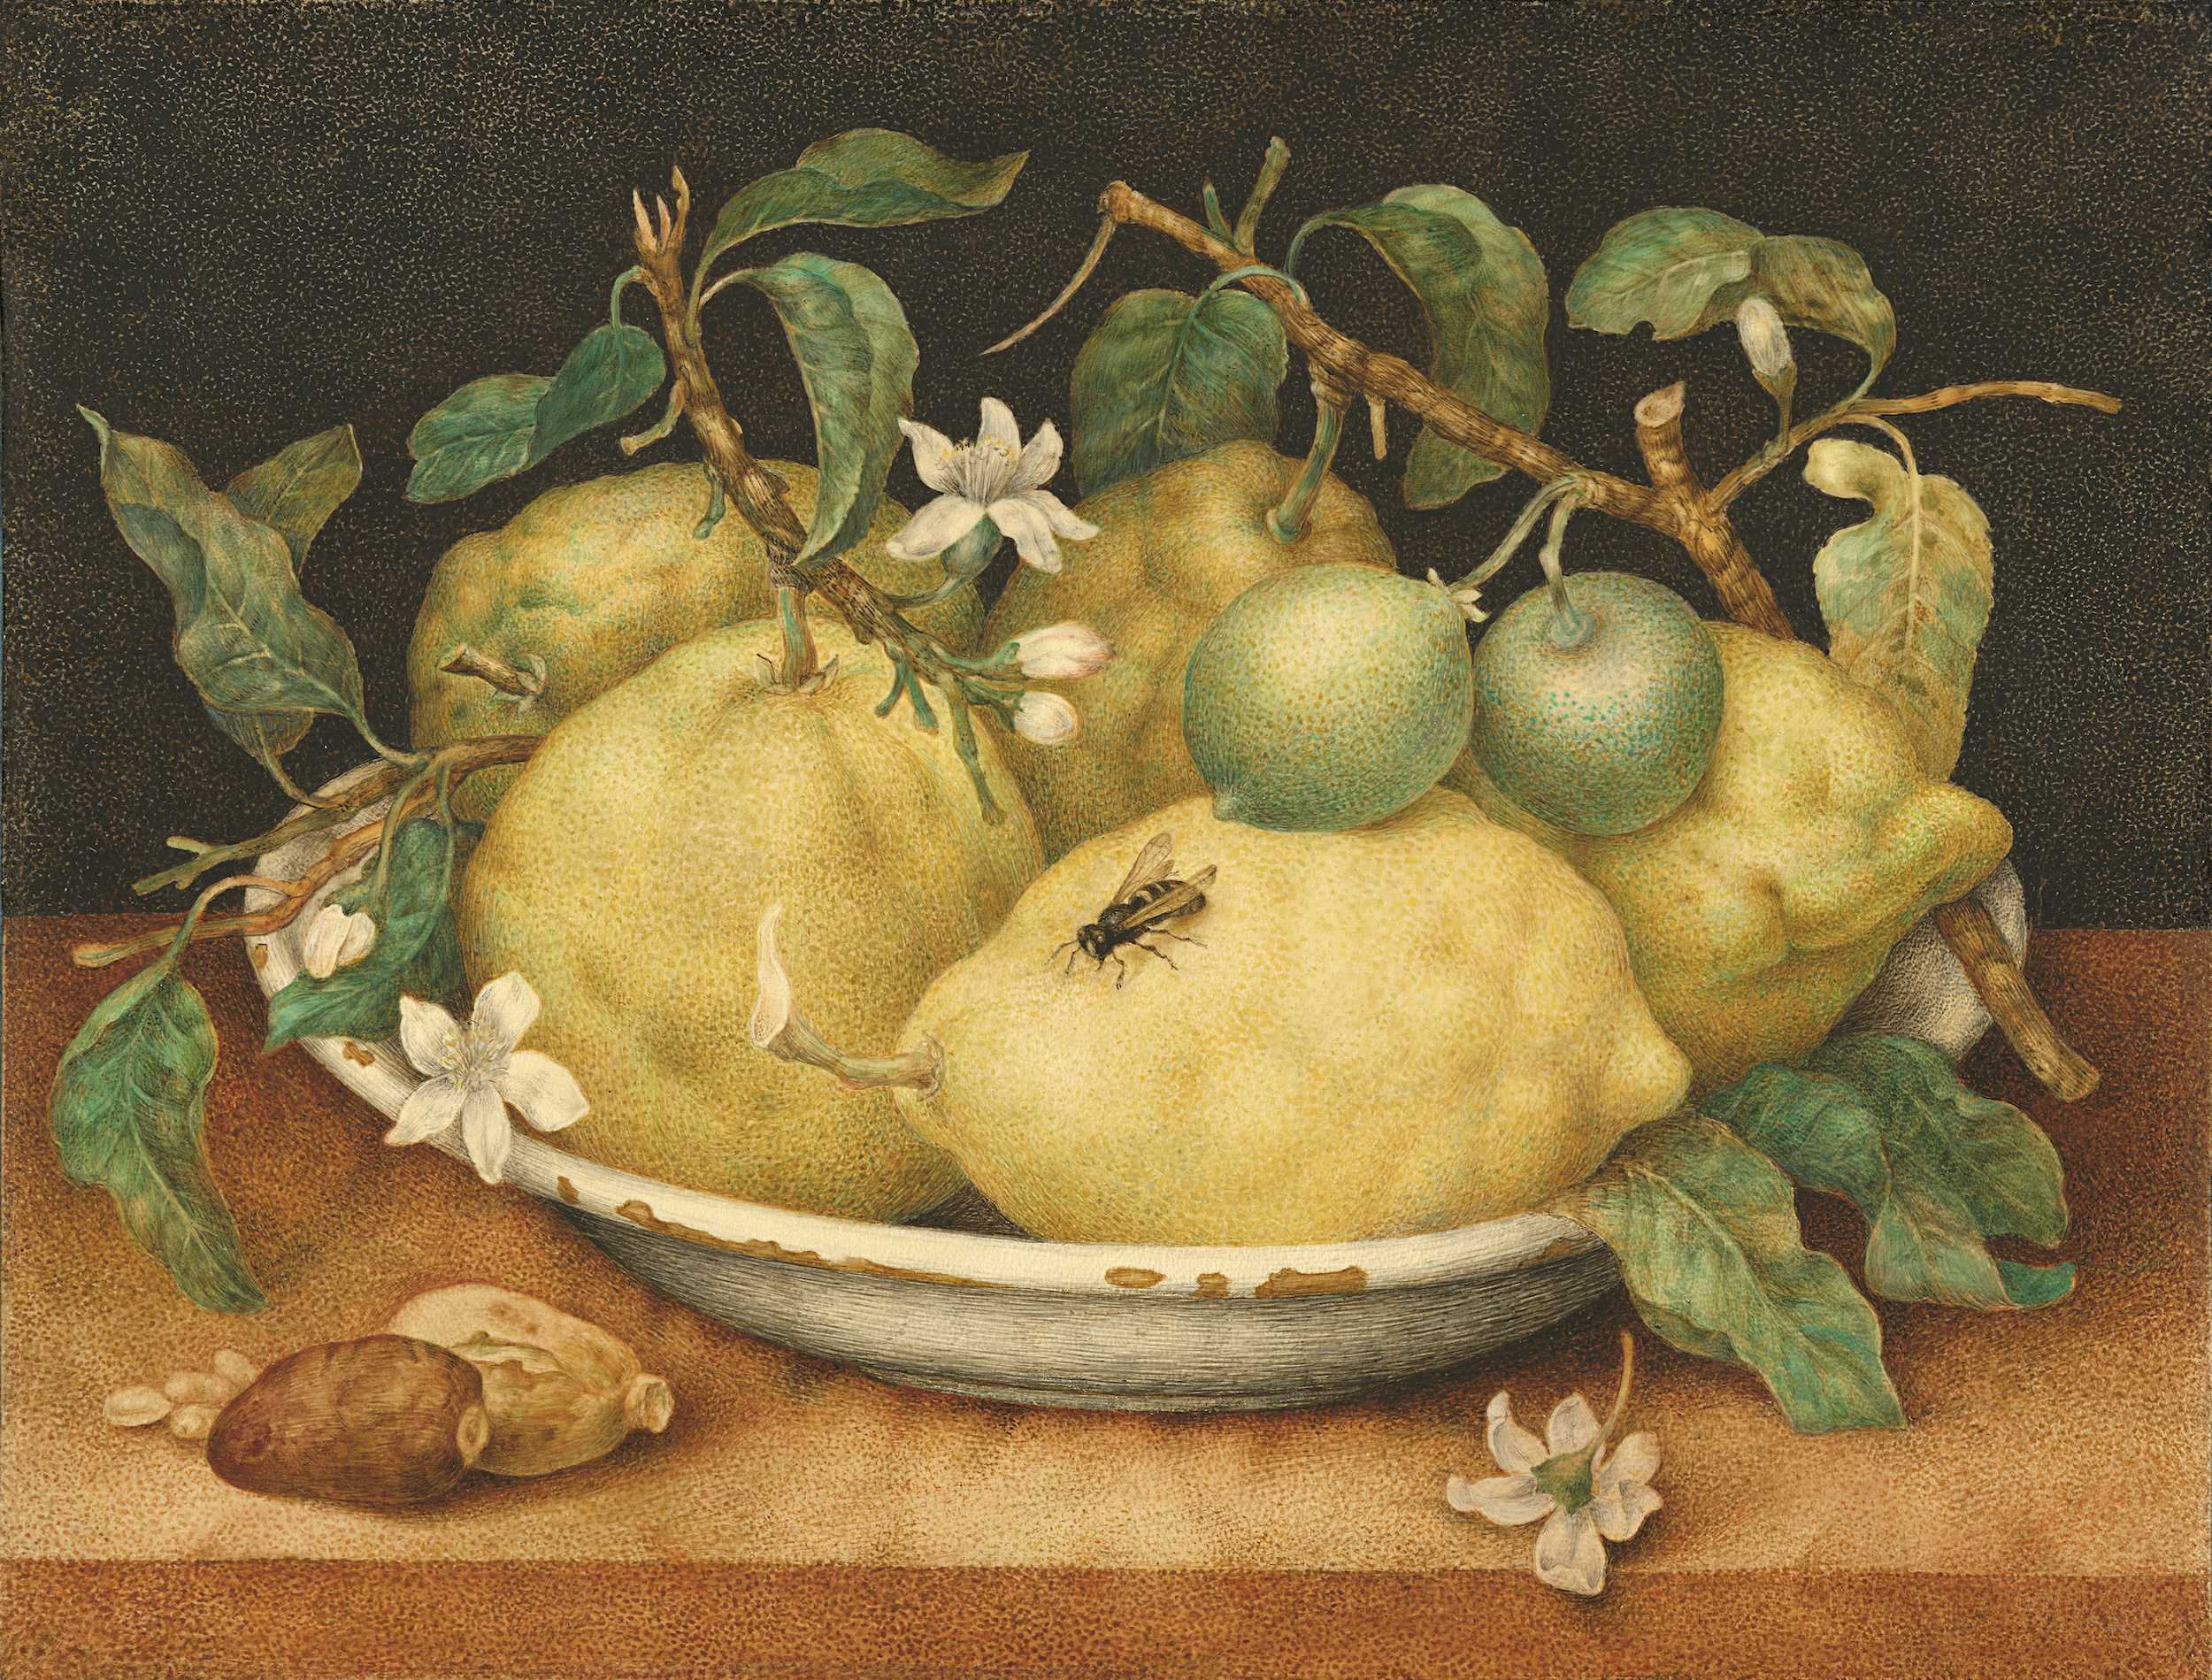 Stilleven van schaal met citroenen by Giovanna Garzoni - omstreeks 1645-49 - 25,4 × 35,5 cm 